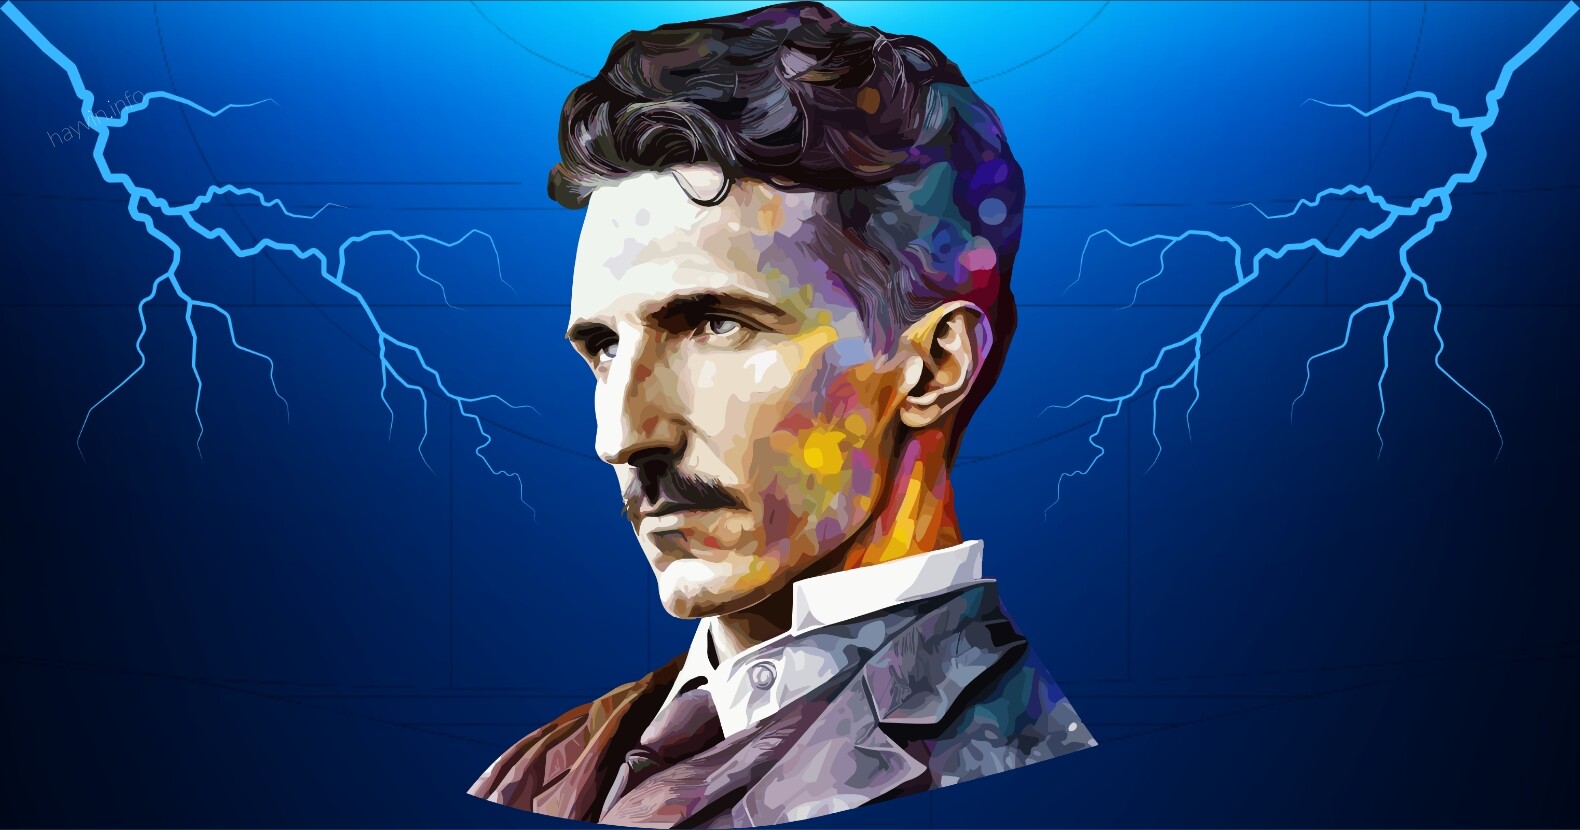 Nikola Tesla rejtvénye, amit csak az emberek 2%-a tud megfejteni, MAXIMÁLIS NEHÉZSÉGŰ vírusos kihívás